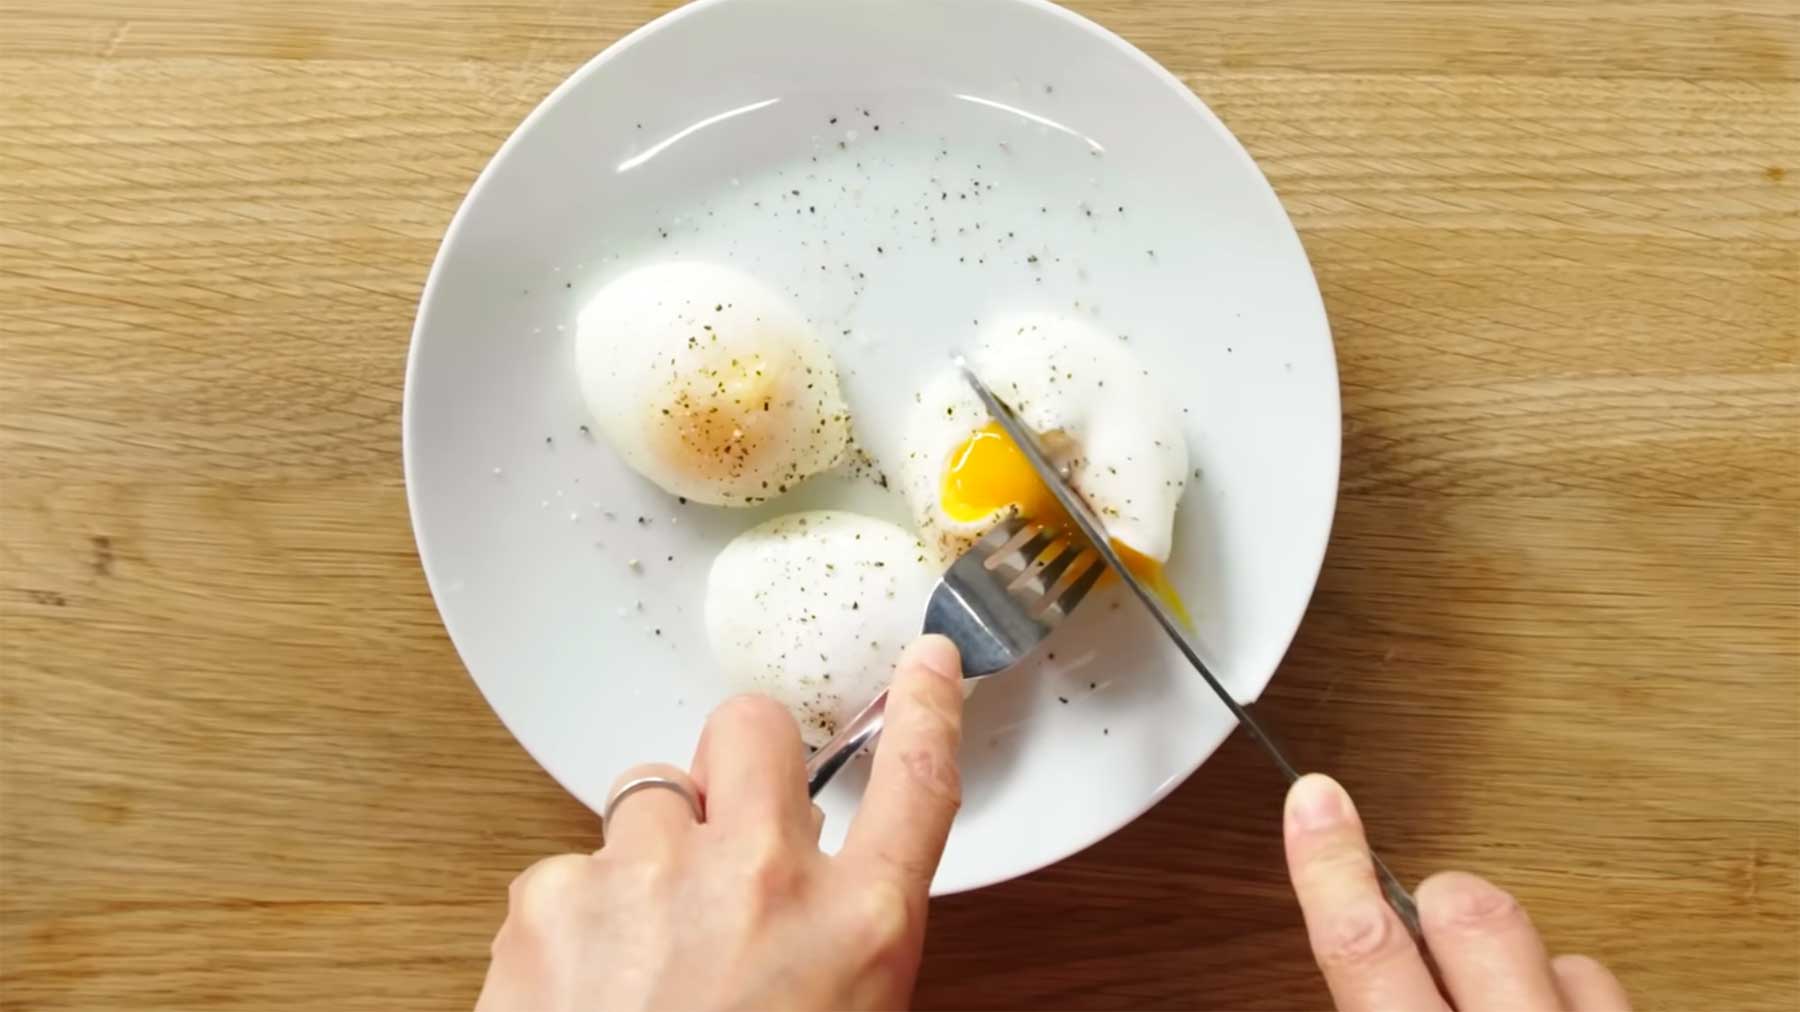 Leichtester Weg, pochierte Eier zu machen pochierte-eier-perfekt-zubereiten 